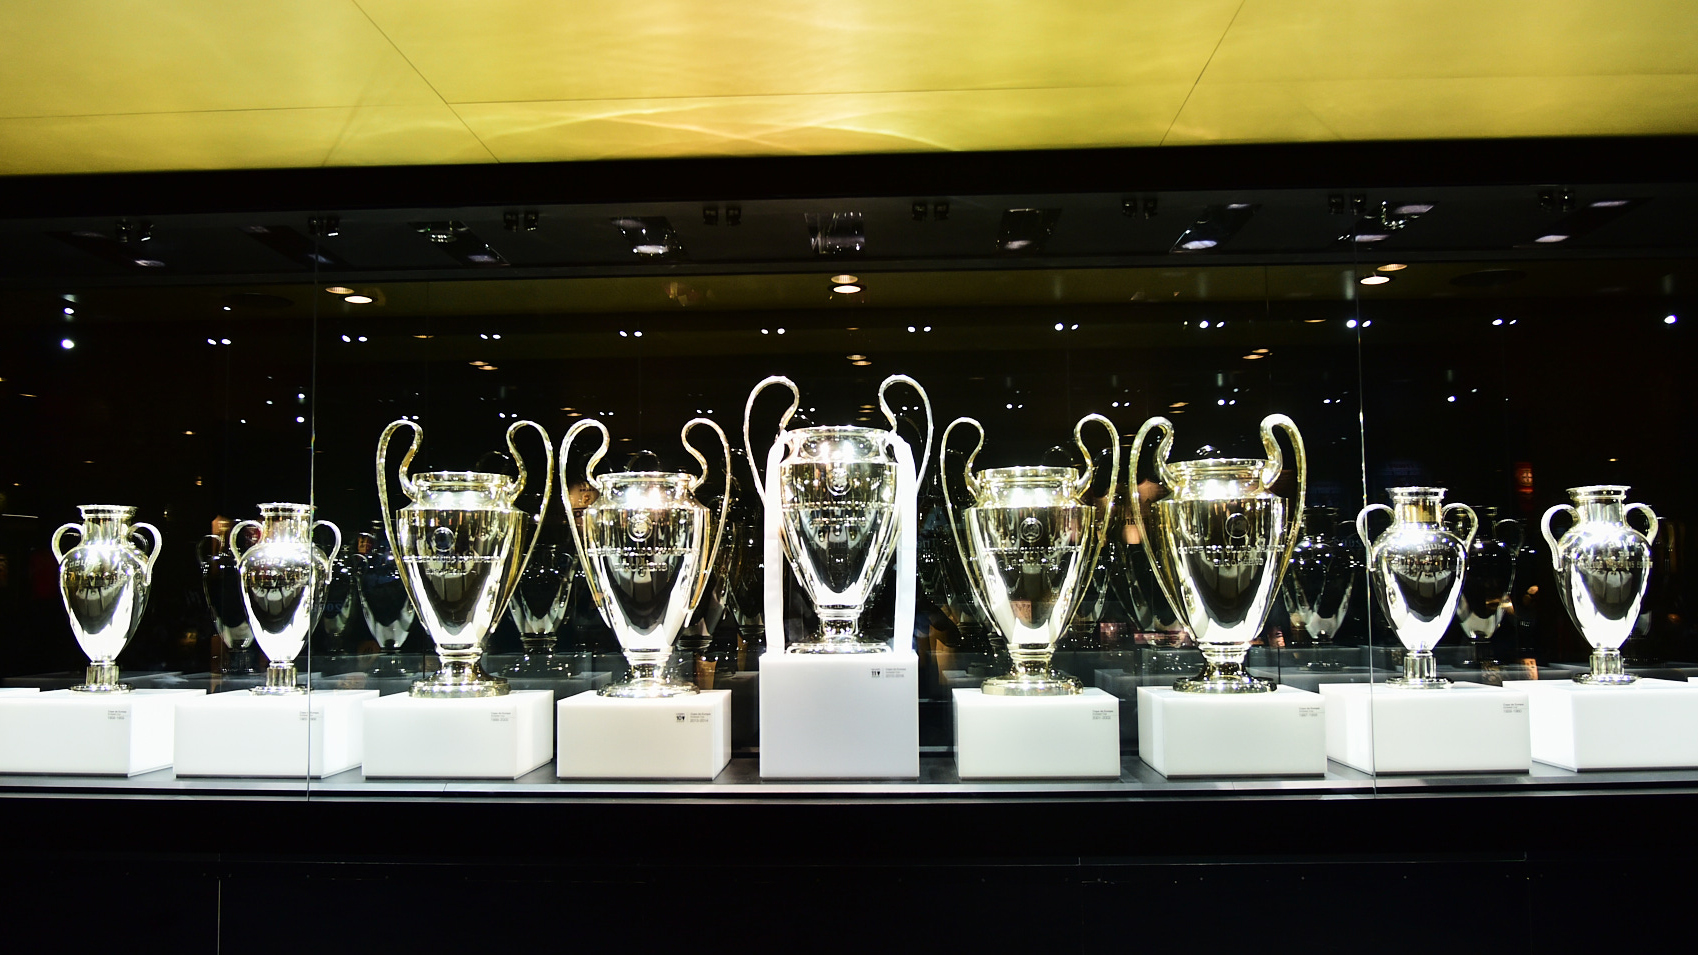 "DNA Champions League" của Real Madrid đến từ đâu?